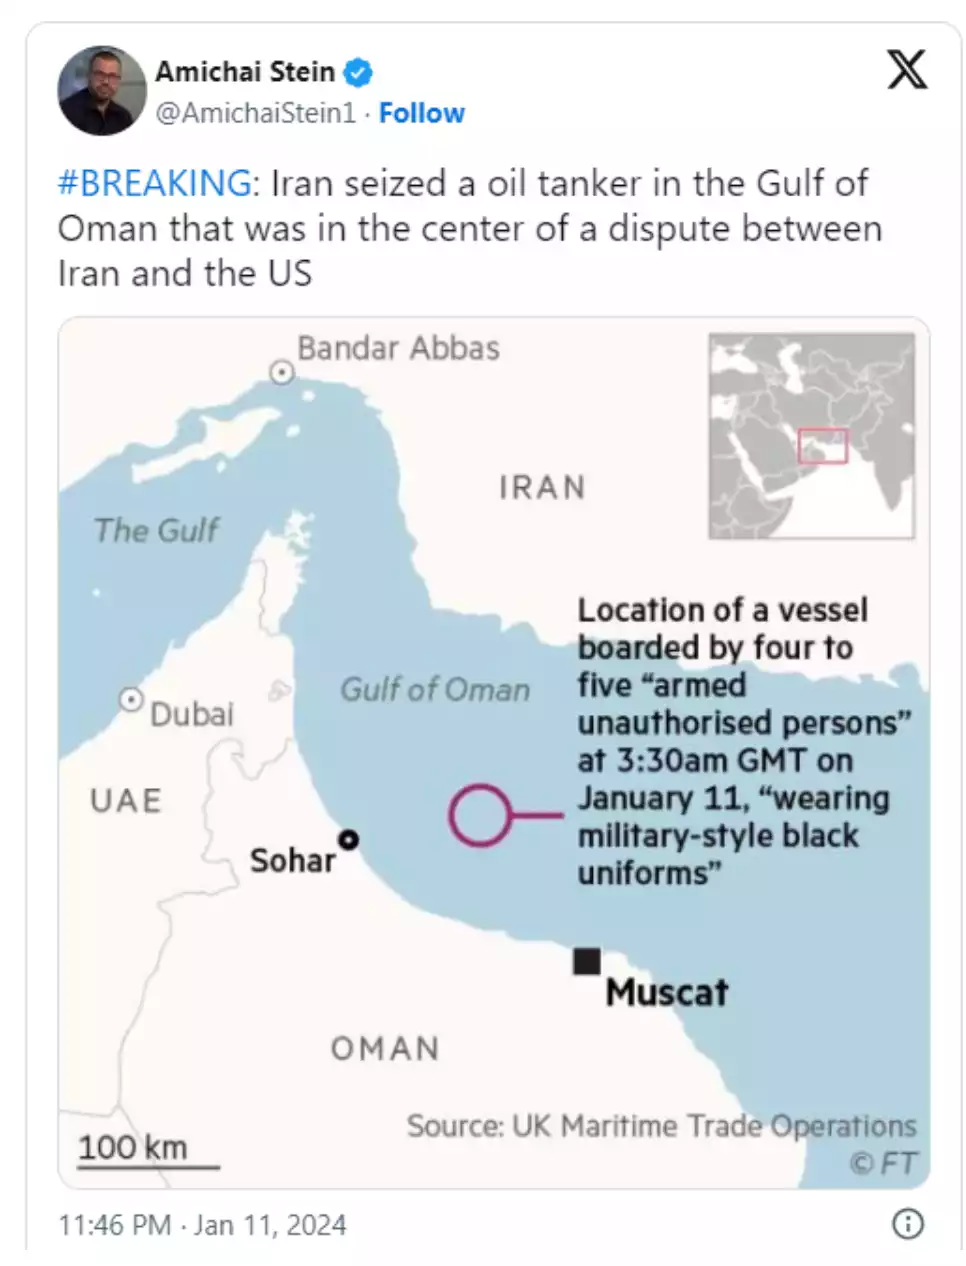 Tweet mentioning seizure of U.S oil tanker